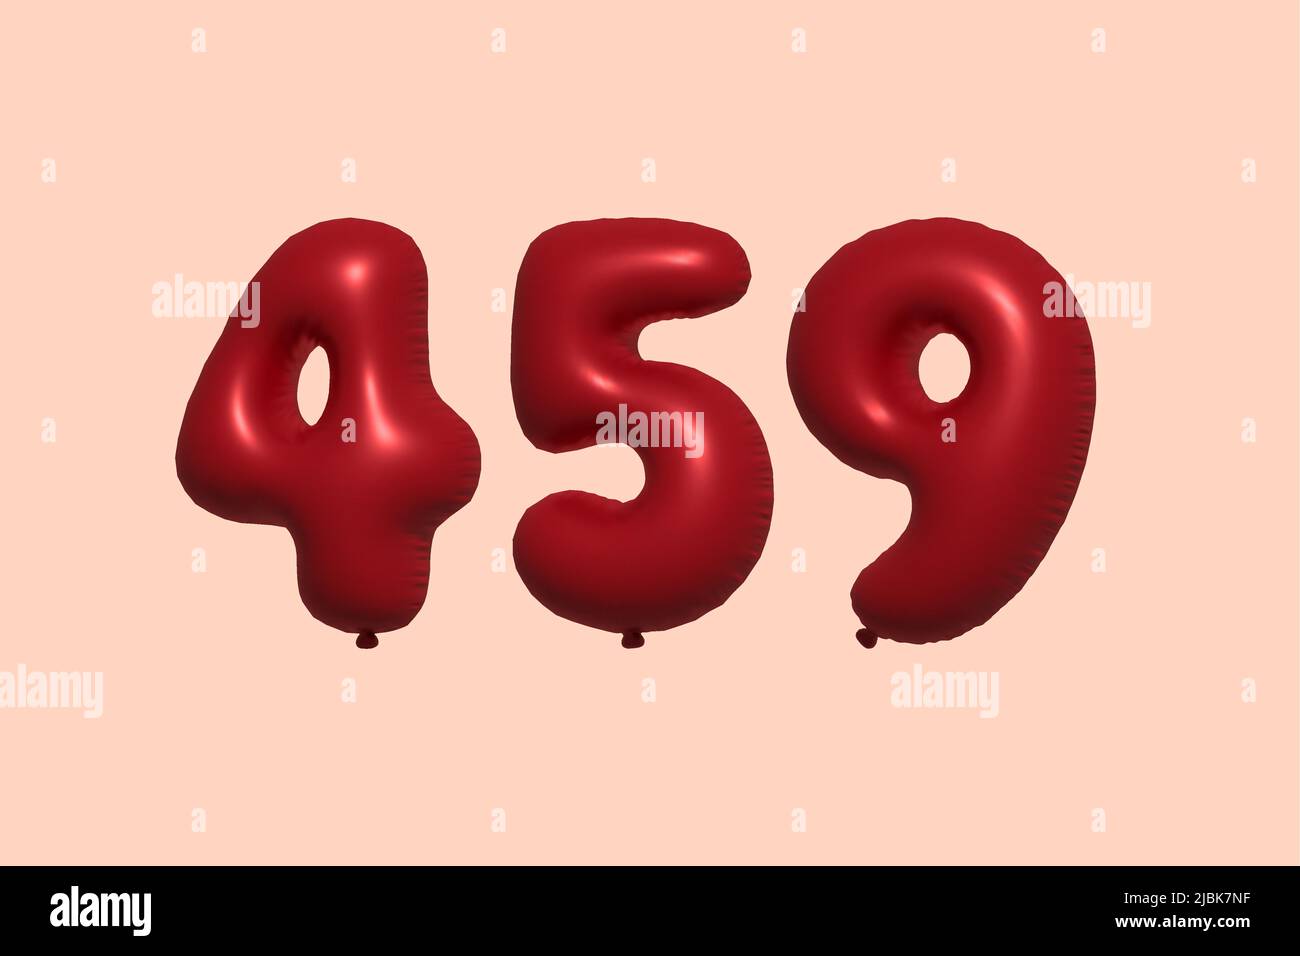 459 3D Zahlenballon aus realistischem metallischem Luftballon 3D Rendering. 3D Rote Heliumballons zum Verkauf Dekoration Party Geburtstag, Jubiläum feiern, Hochzeitsfeiertag. Vektorgrafik Stock Vektor